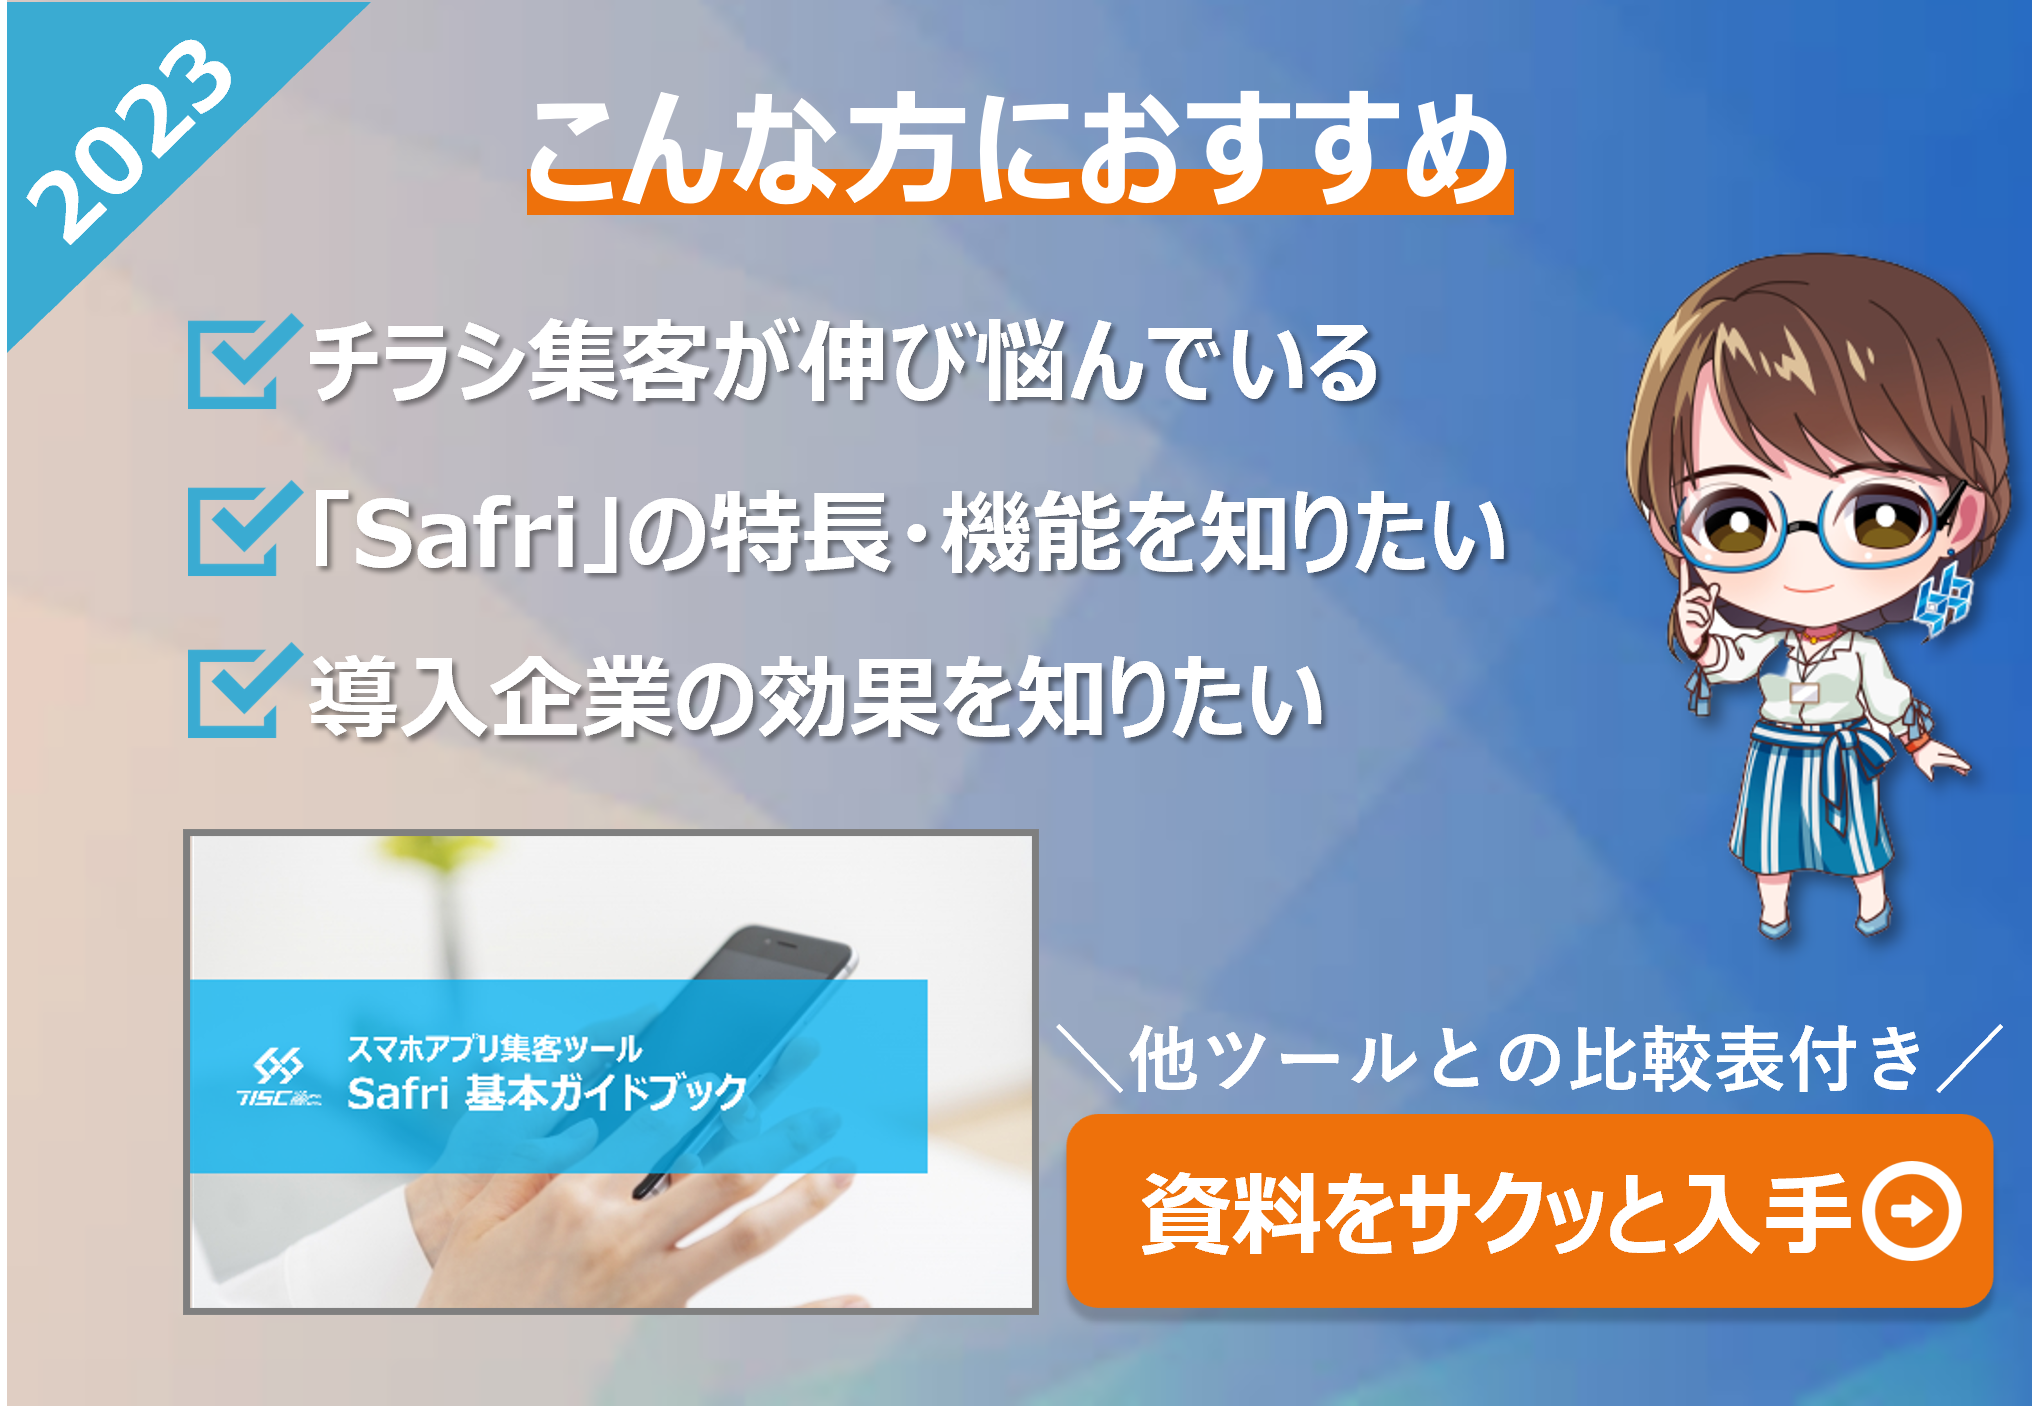 【ダウンロード資料】Safri製品ガイドブック